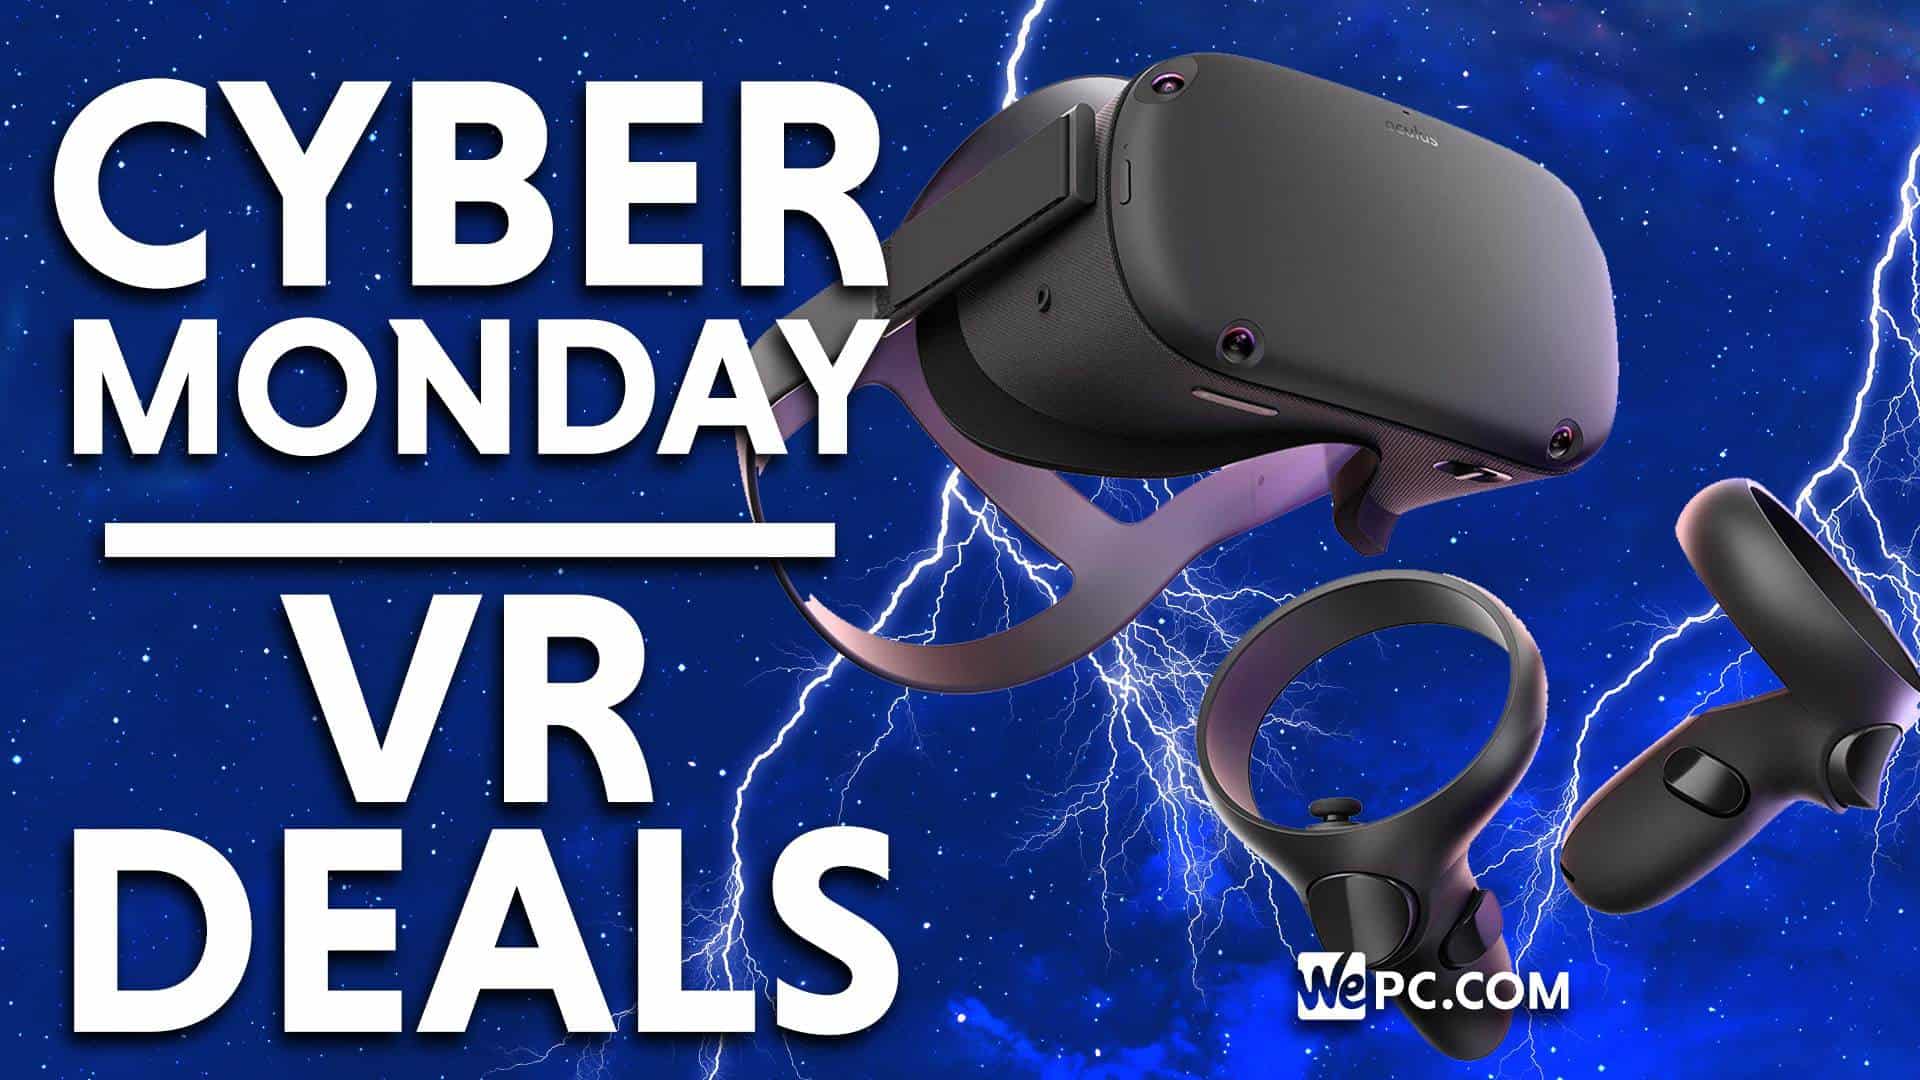 oculus cyber monday deals